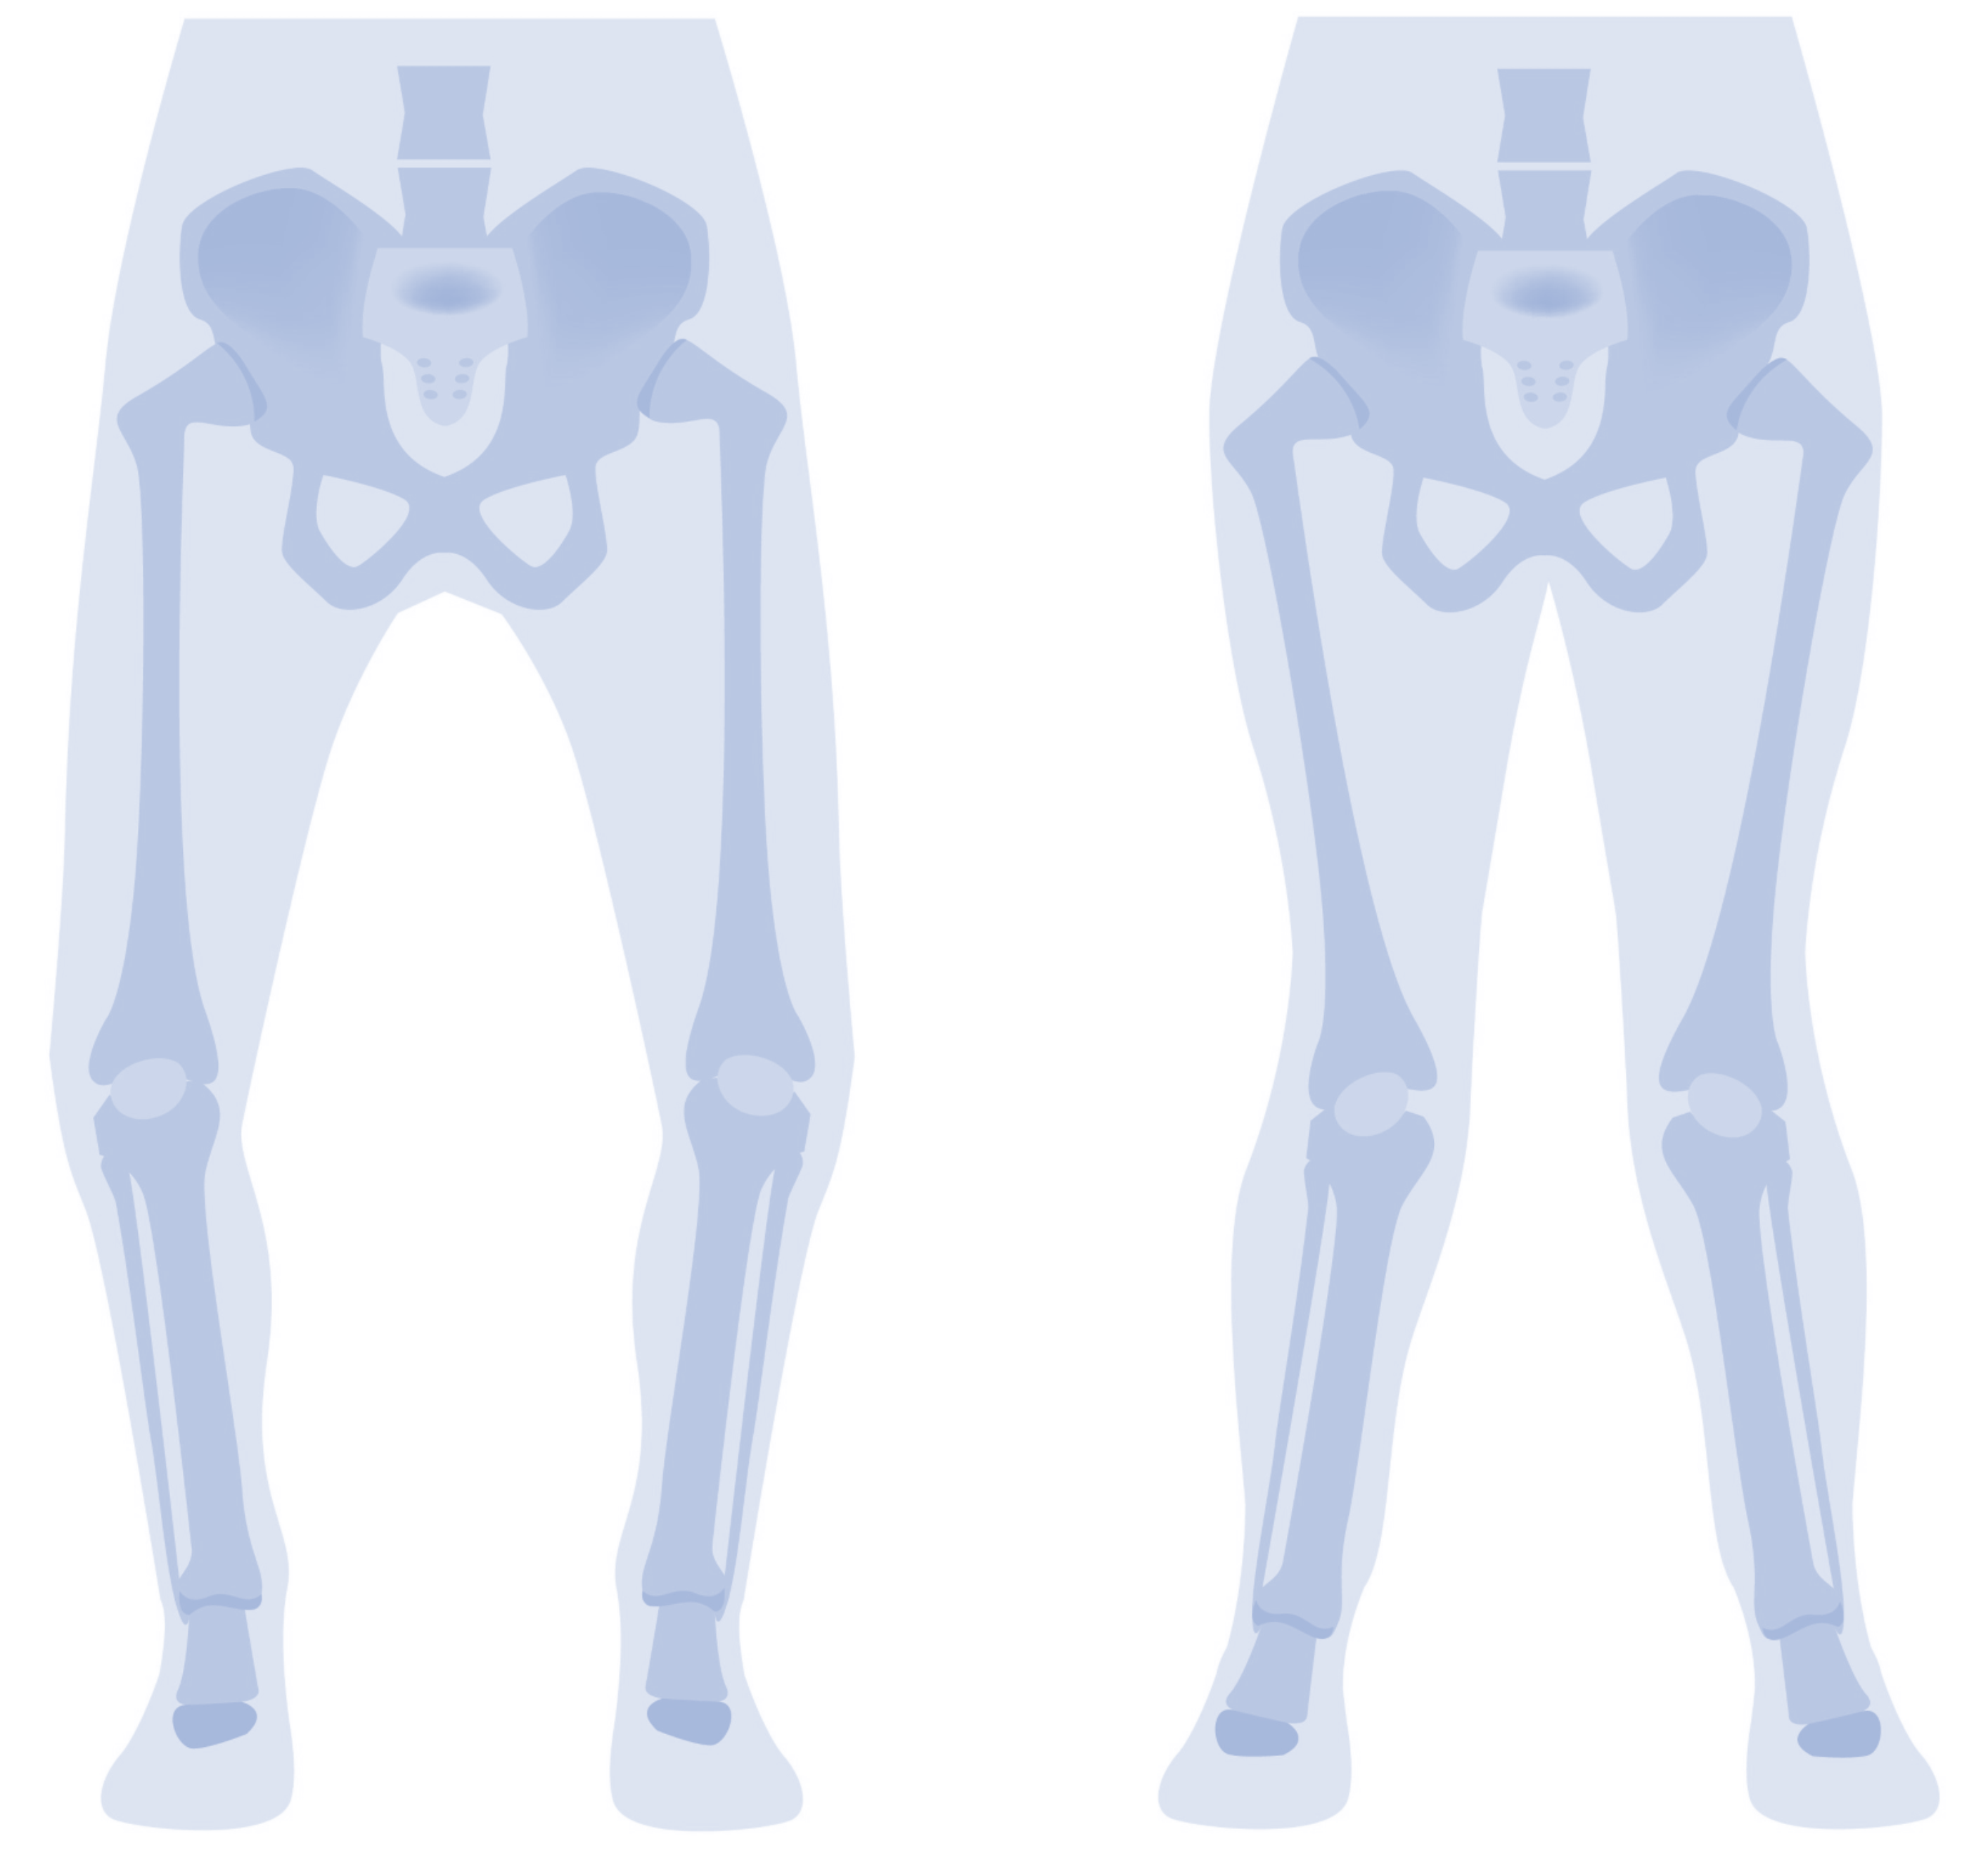 Informationabend der Orthopädie: Beinfehlstellungen